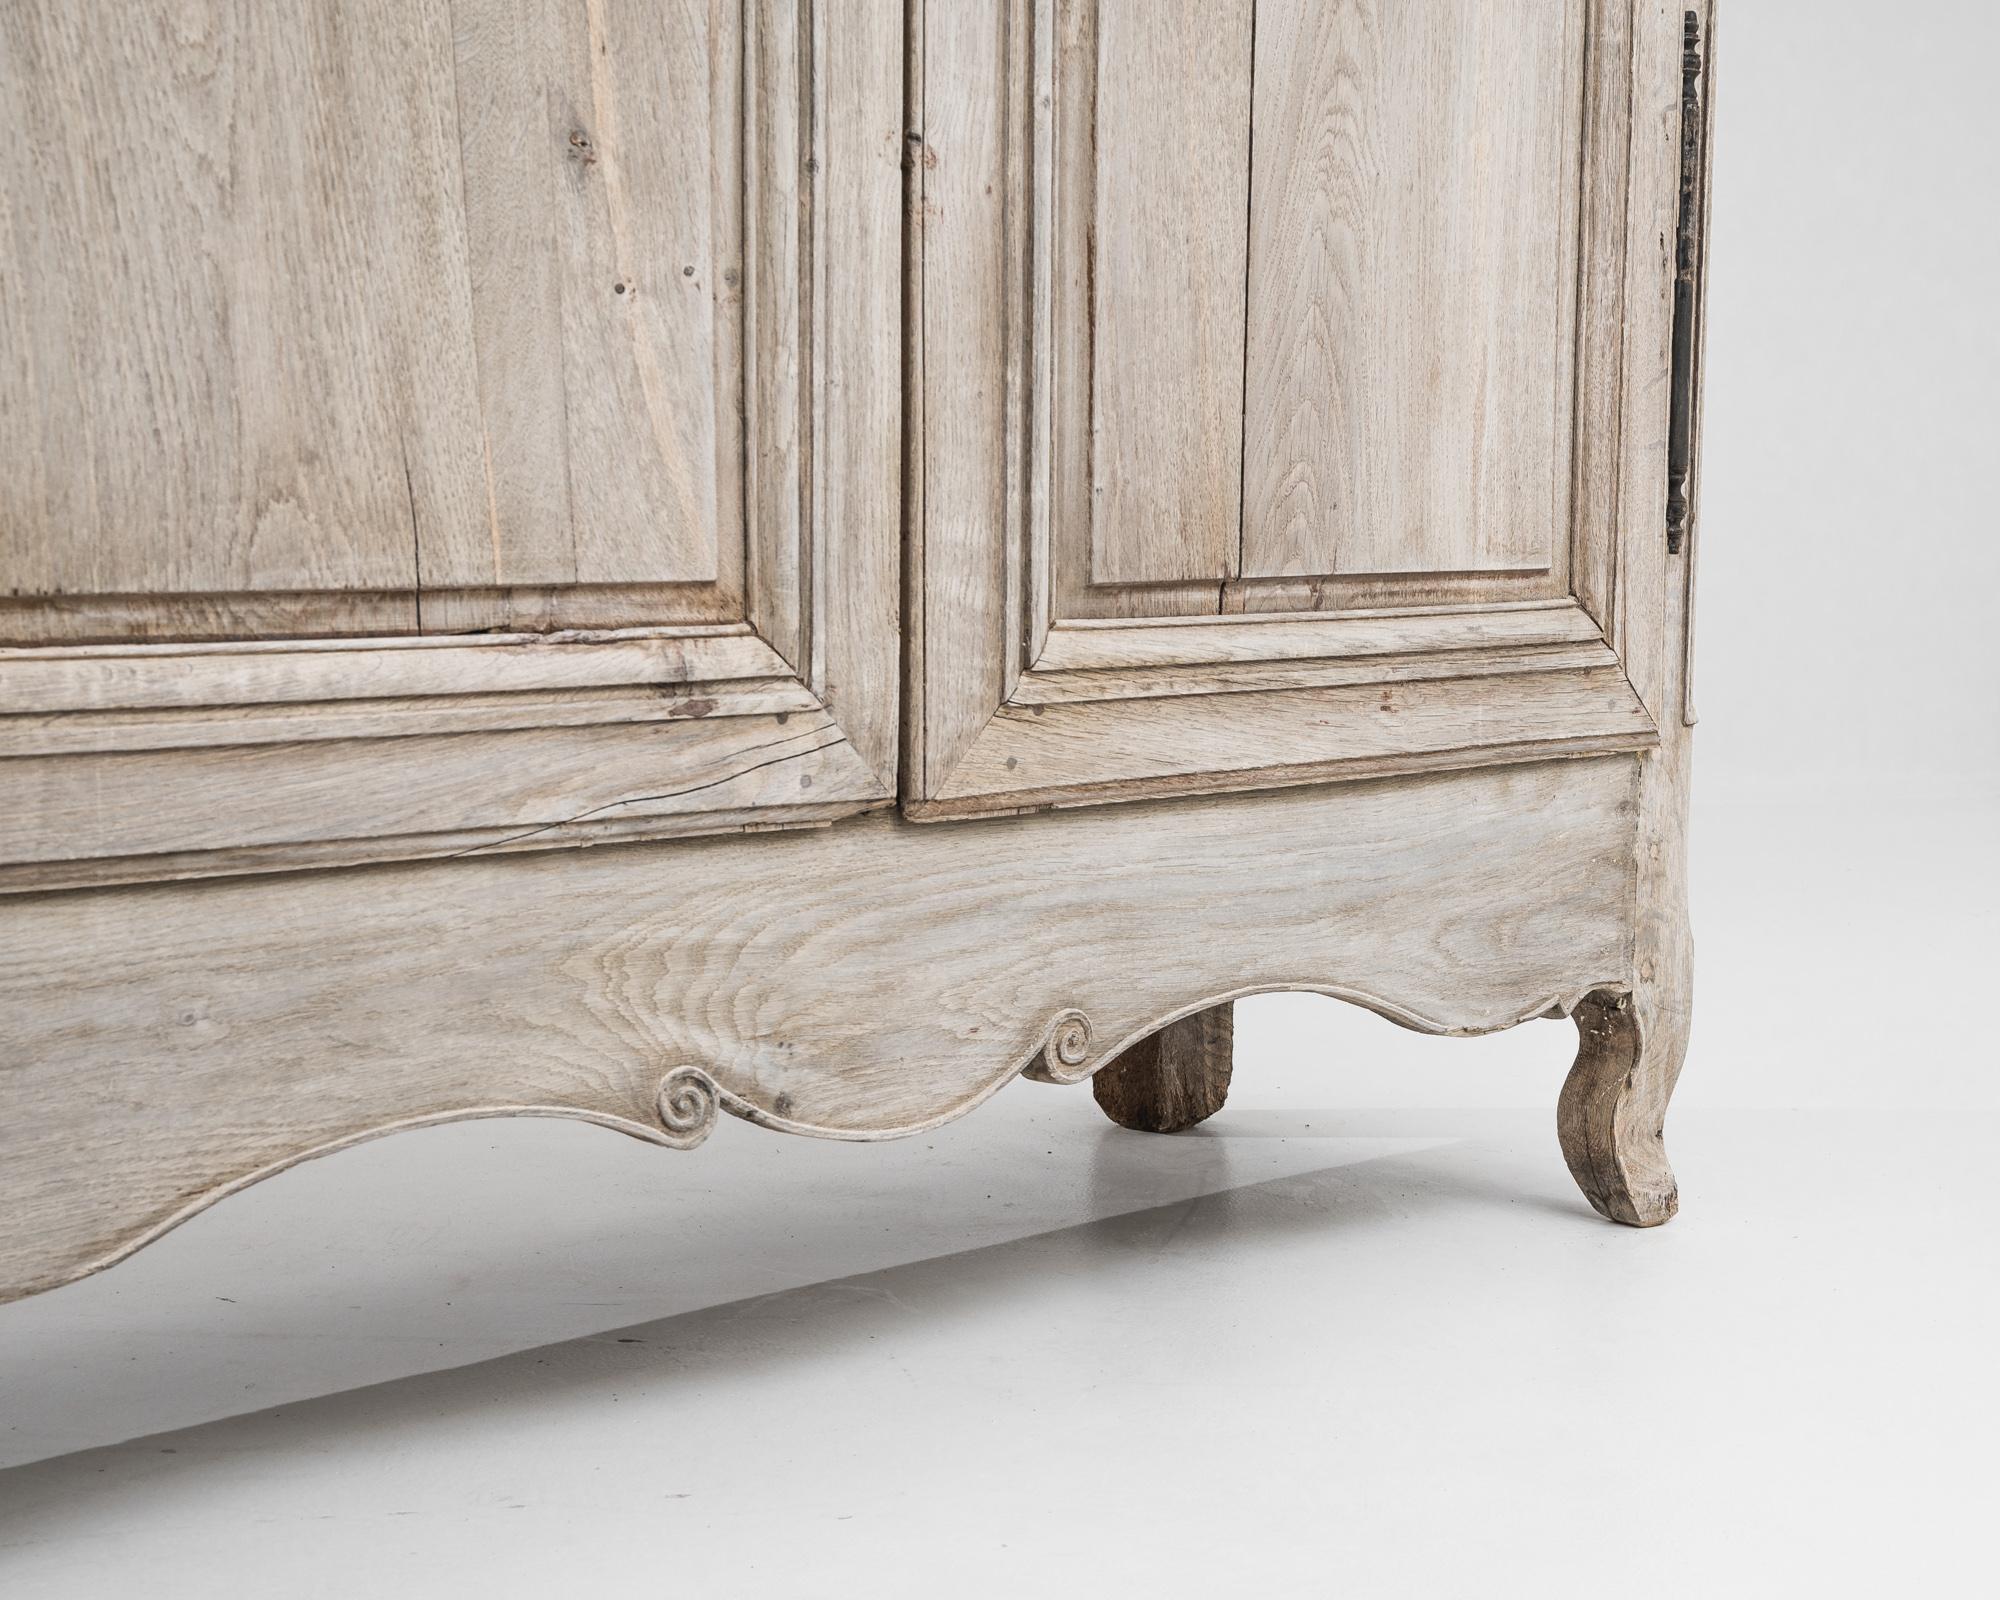 Dieser französische Holzschrank aus dem frühen 19. Jahrhundert ist von beeindruckender Größe und verbindet antiken Charme mit unvergleichlicher Handwerkskunst. Durch ein behutsames Bleichverfahren wird die Oberfläche des Eichenholzes verjüngt,